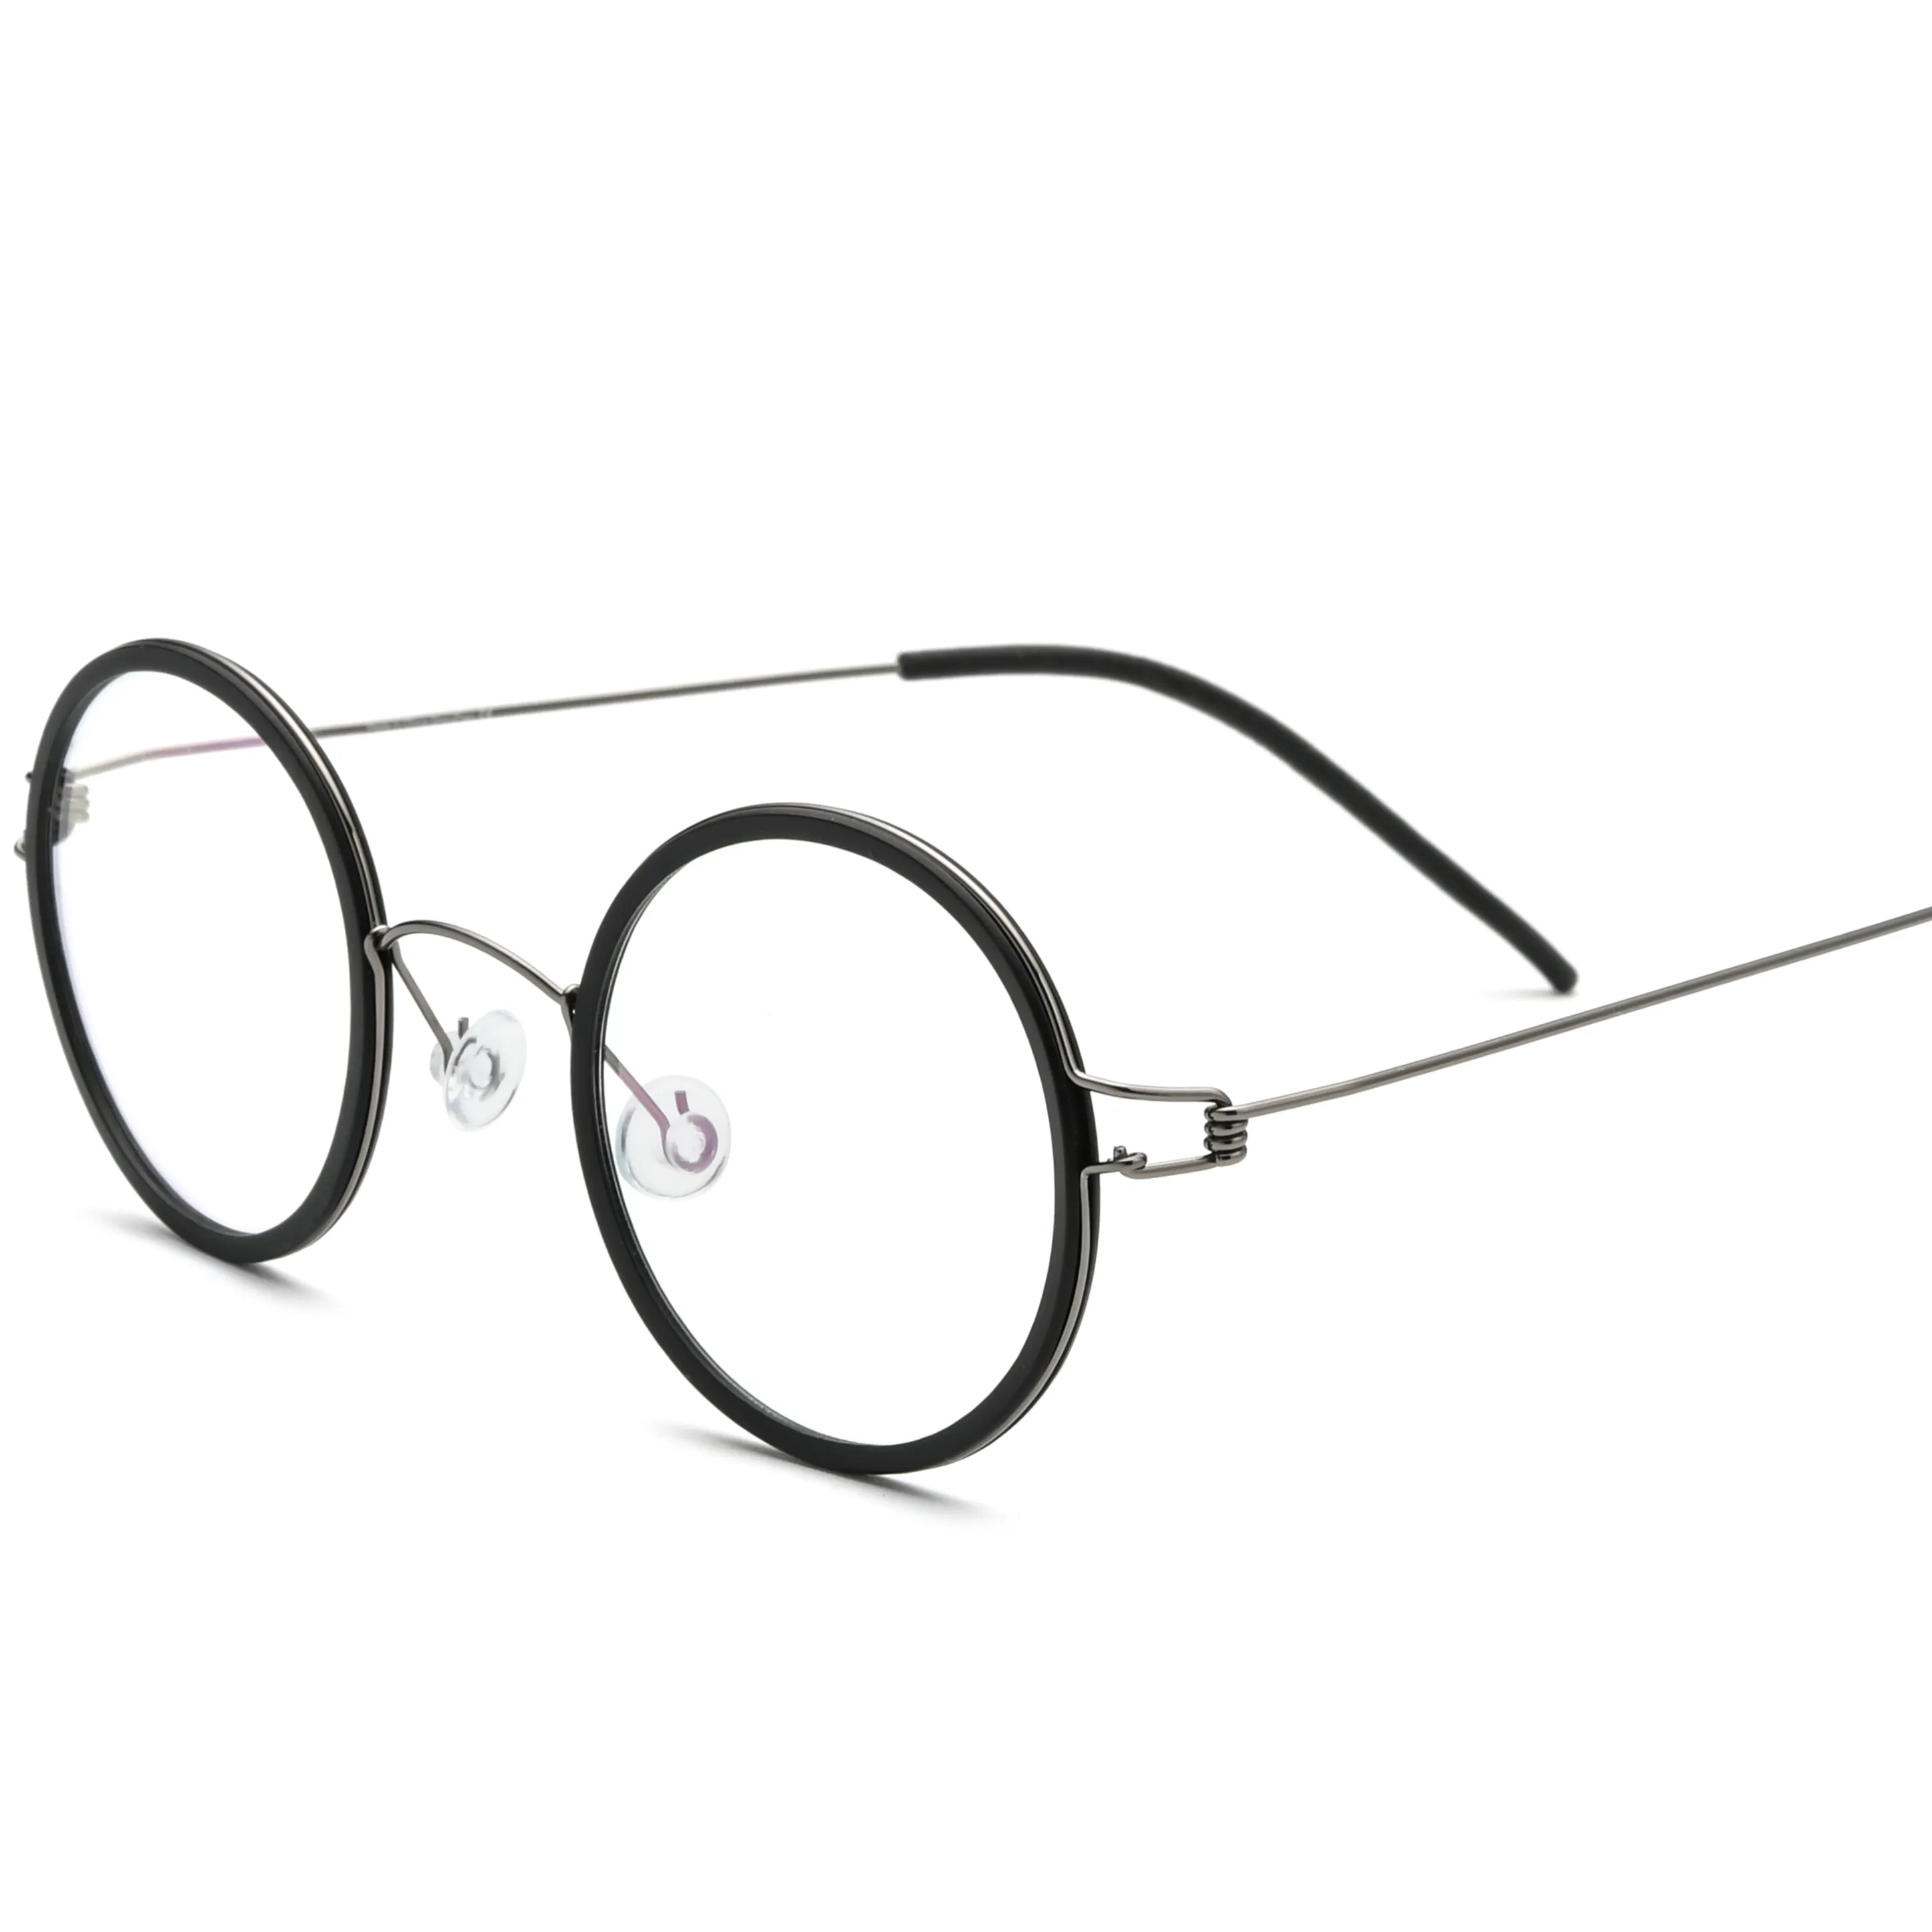 チタンメガネフレーム男性女性ラウンド近視光学処方眼鏡韓国スクリューレスアイウェア